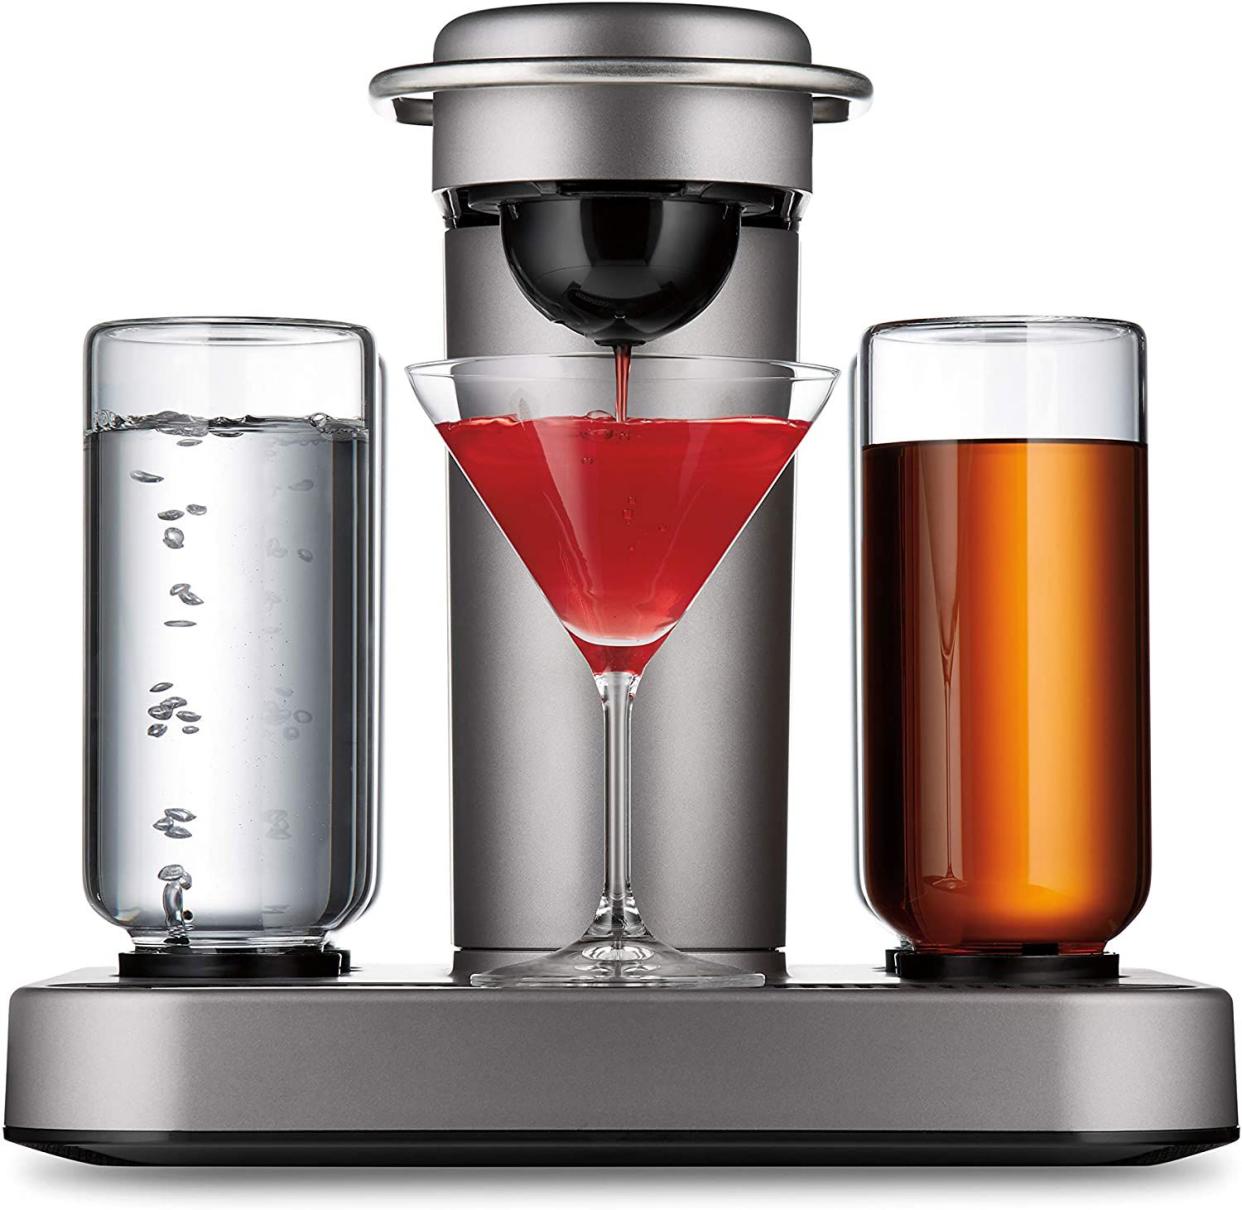 Bartesian Premium Cocktail and Margarita Machine in platinum